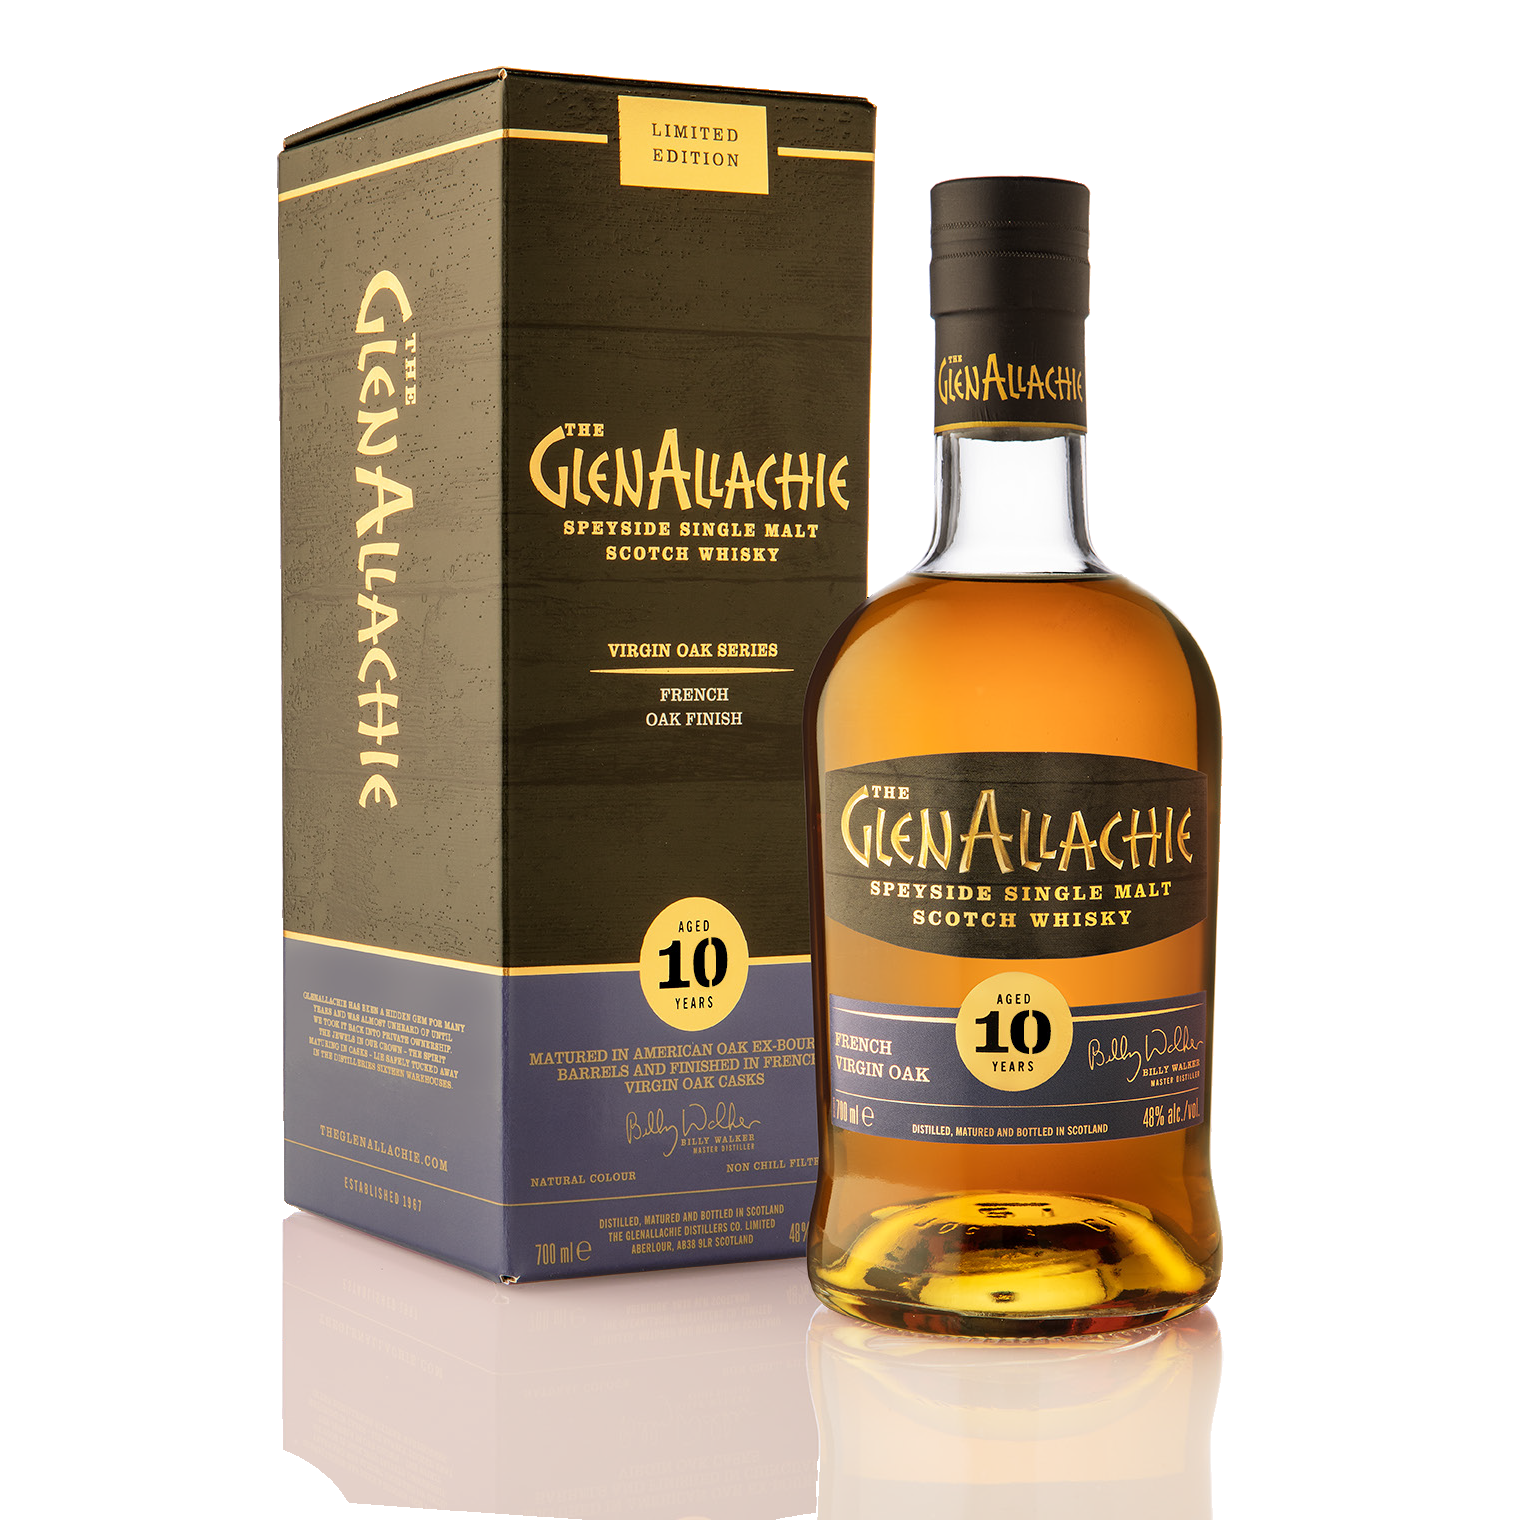 GlenAllachie Virgin Oak Series: French Virgin Oak 10 Year Old Limited Edition - Single Malt Scotch Whisky-Single Malt Scotch Whisky-5060568324845-Fountainhall Wines